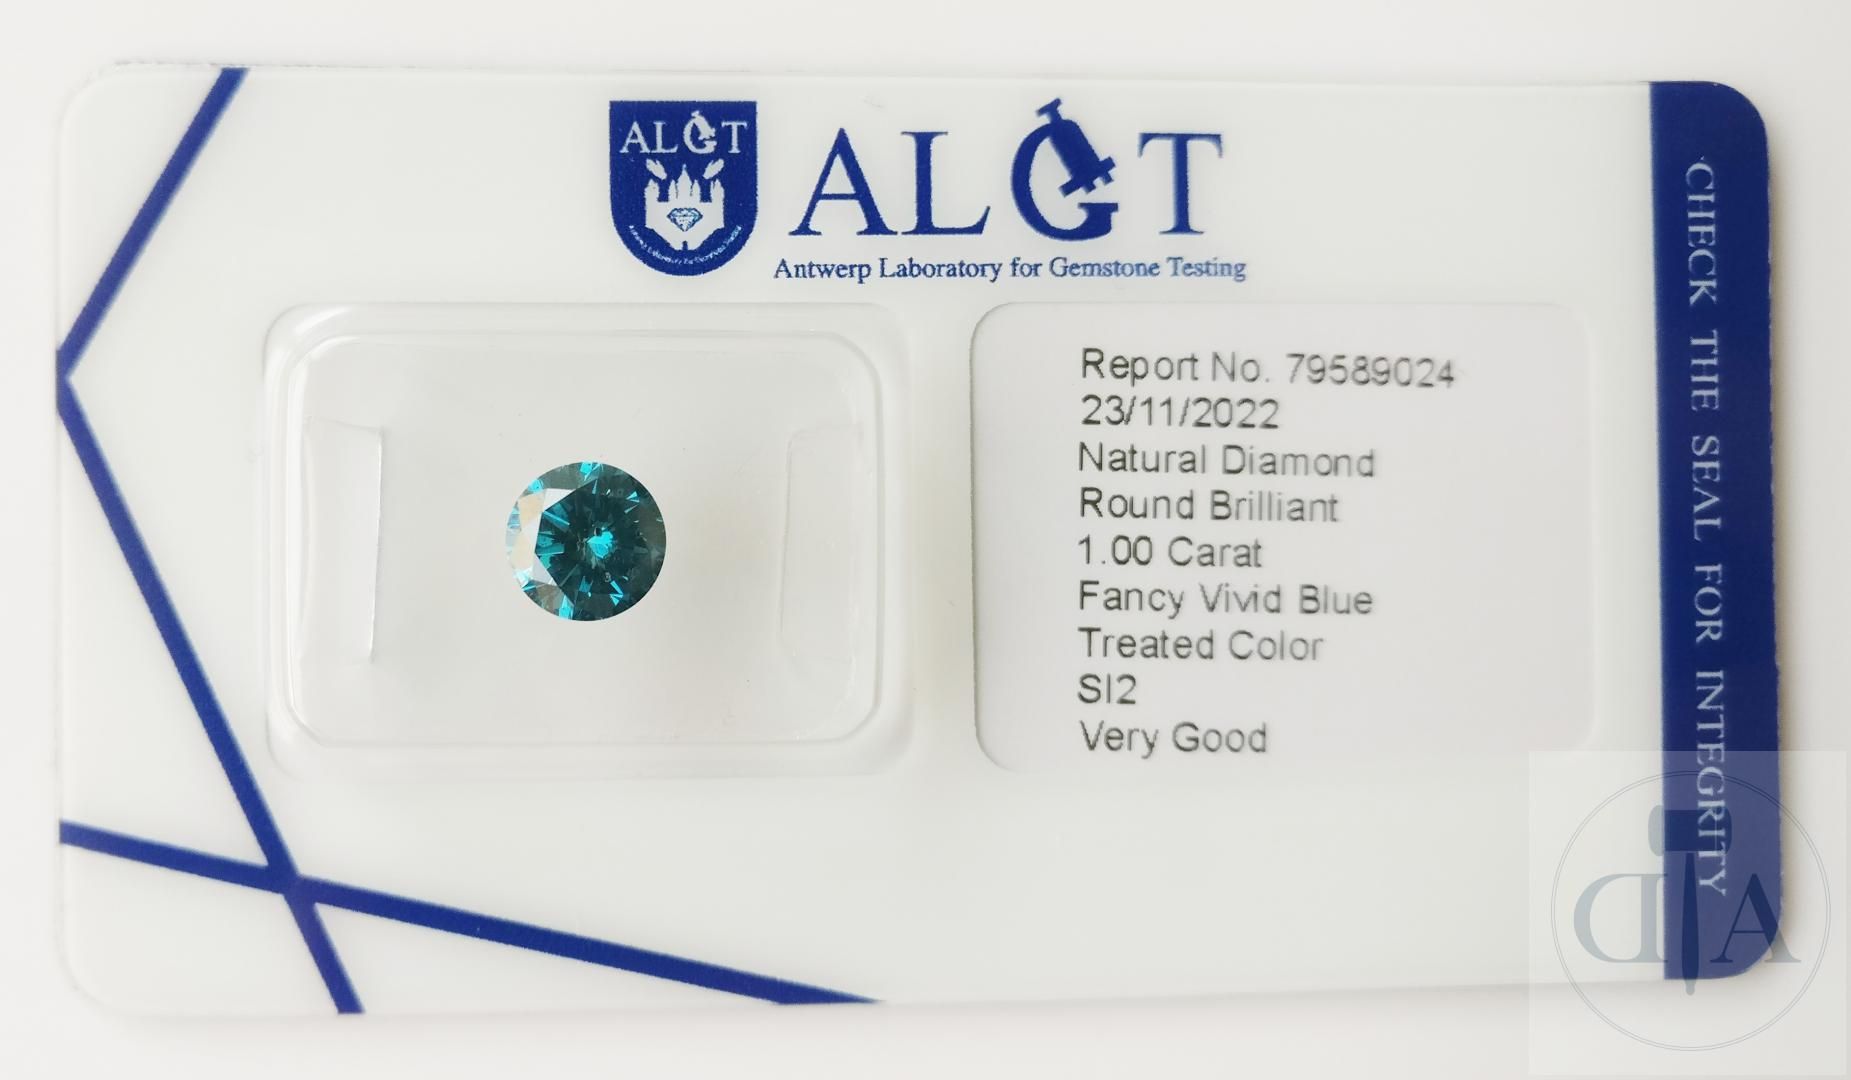 Null 鲜艳蓝色钻石 1.00ct ALGT 认证

- ALGT 证书编号：79589024 
- 形状：圆形明亮式切割圆形明亮式切割
- 克拉重量： 1.&hellip;